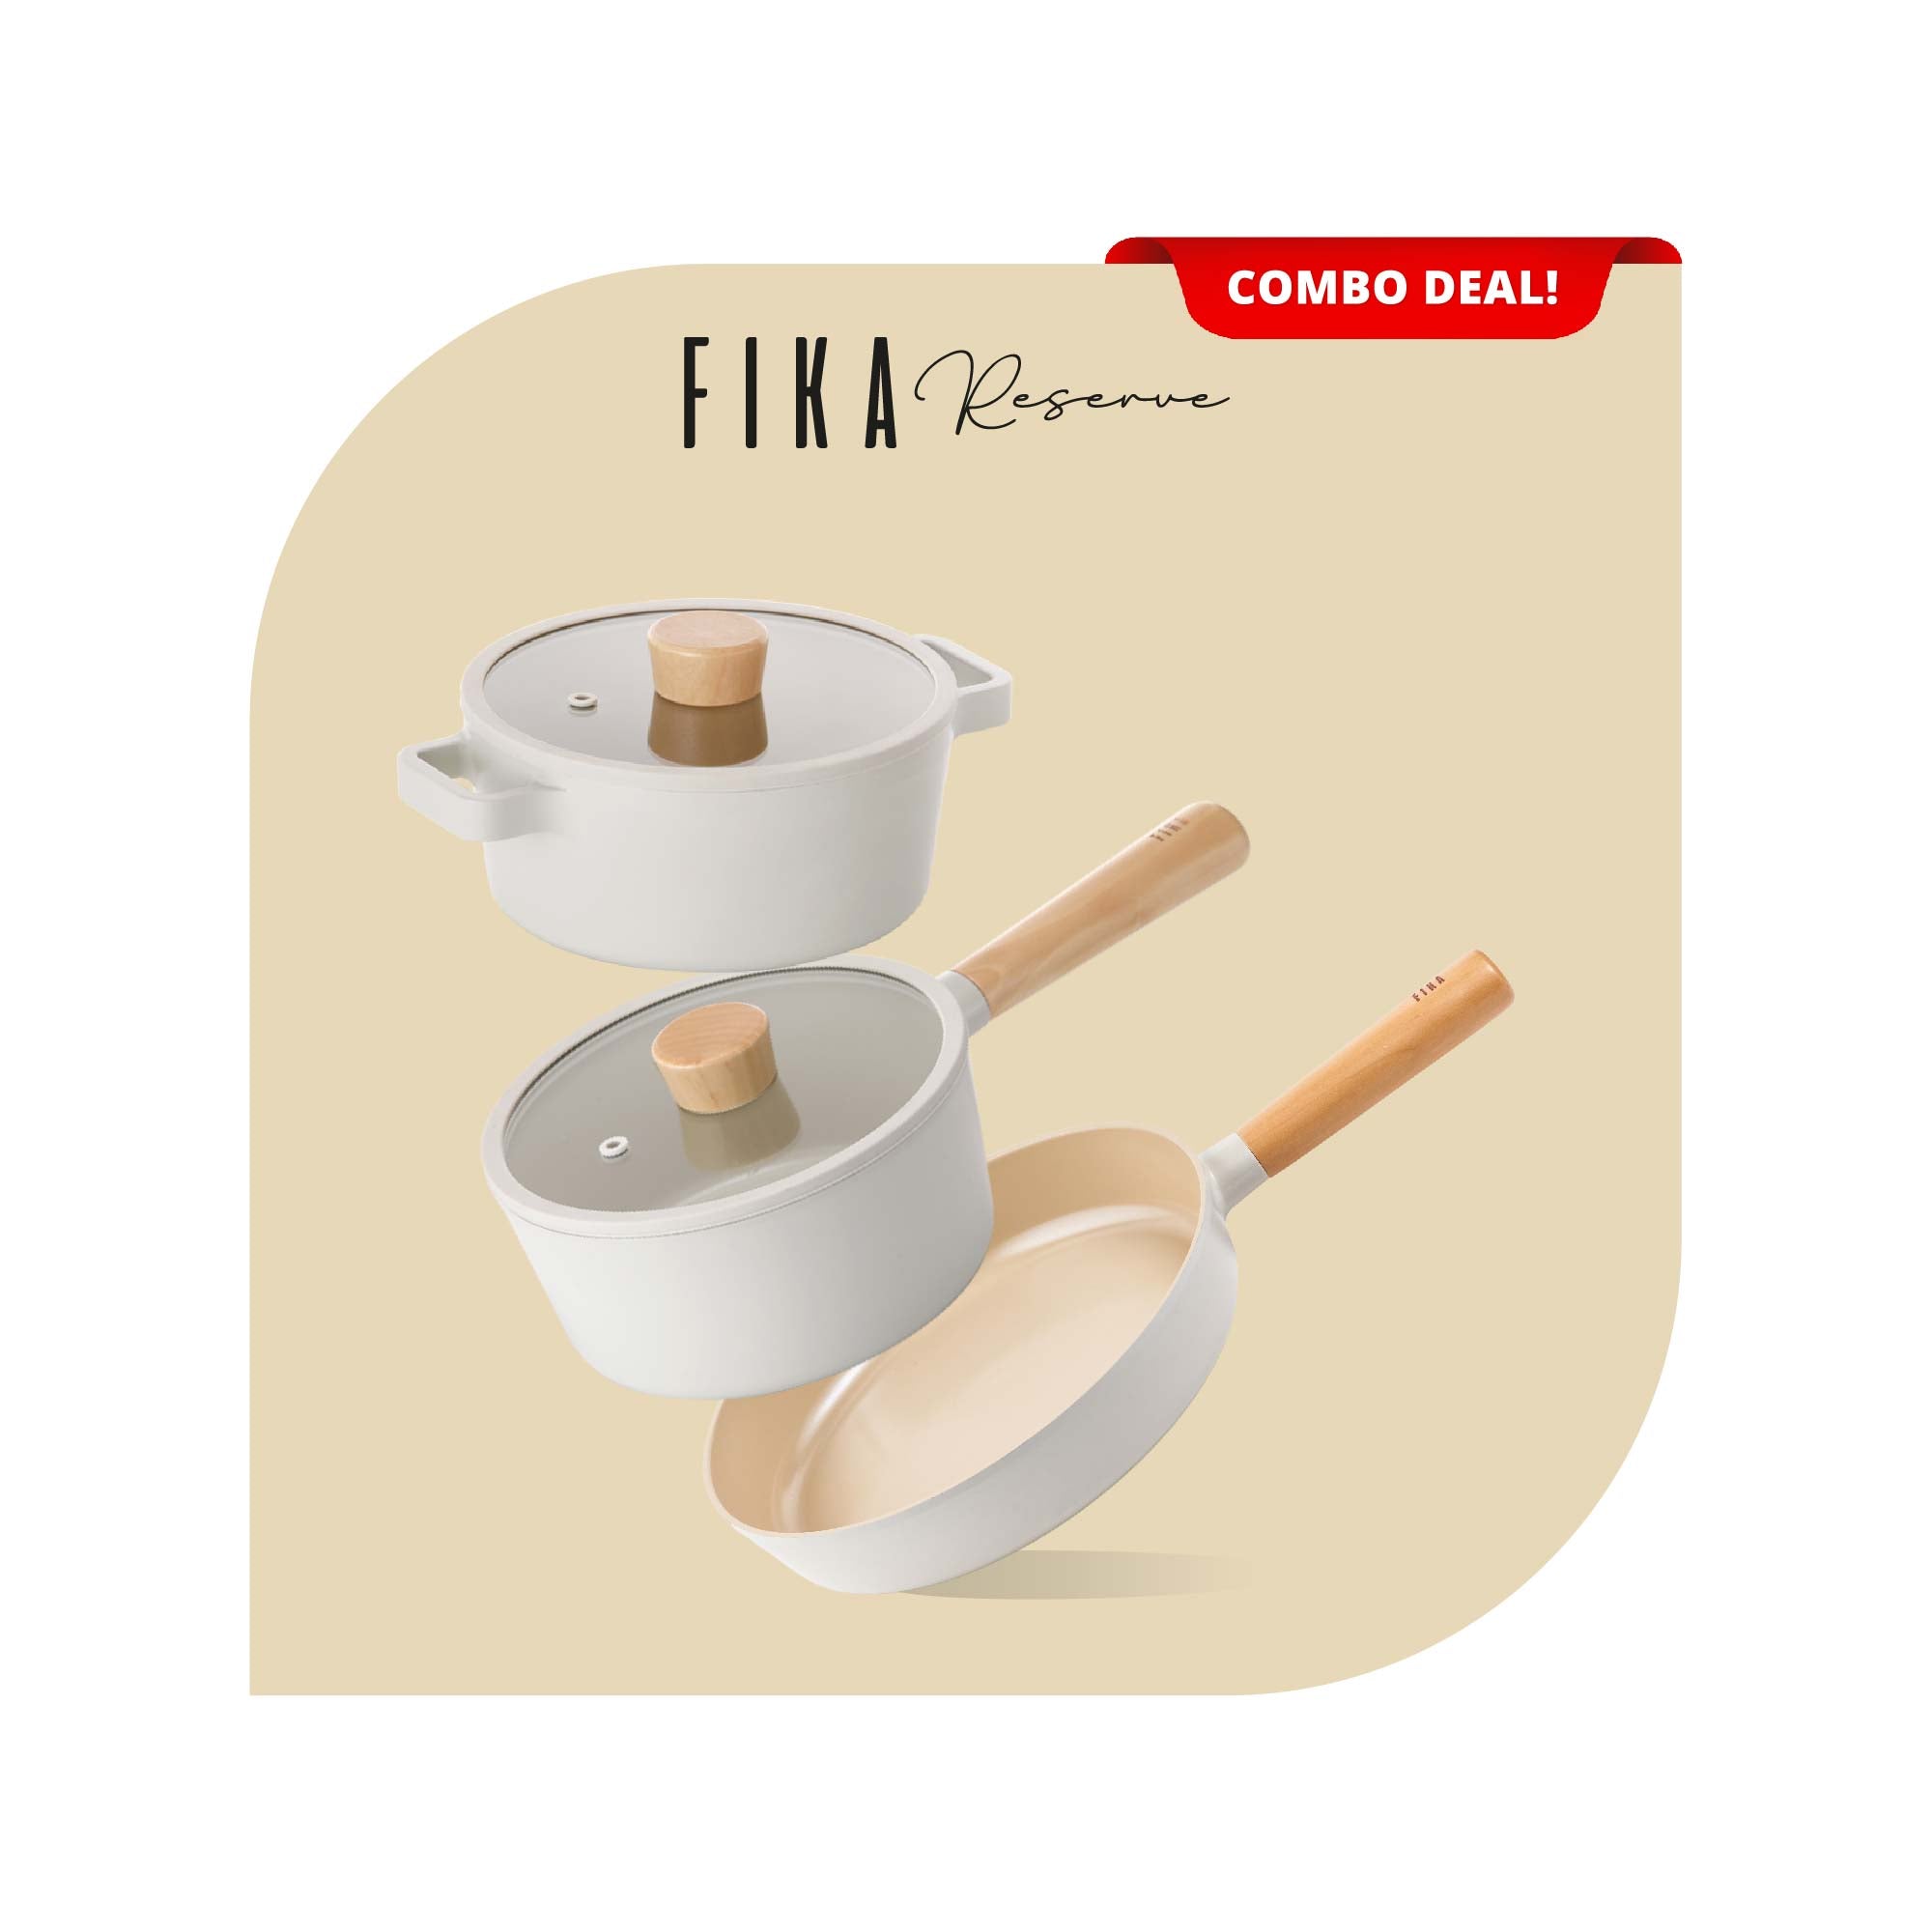 FIKA Pan Set – Cook with FIKA